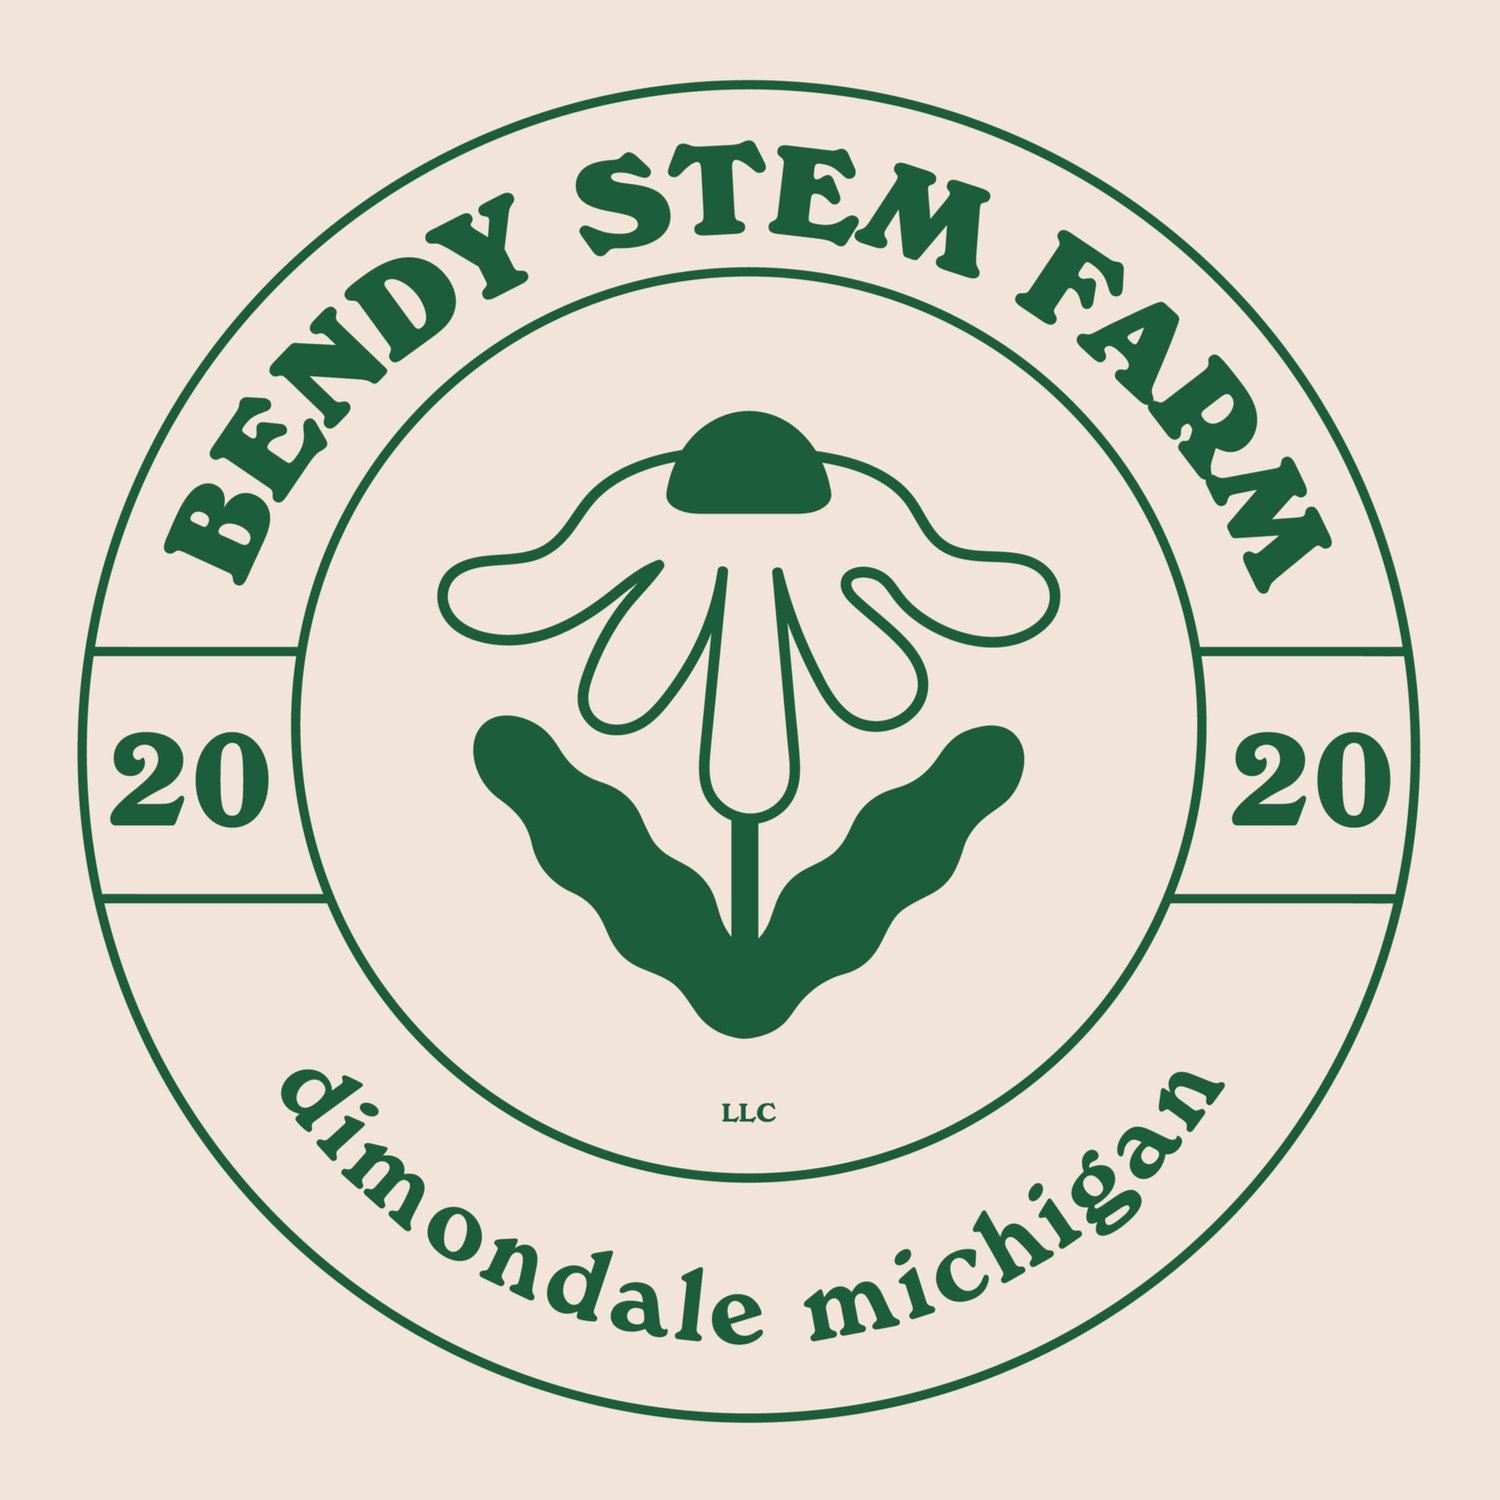 Bendy Stem Farm